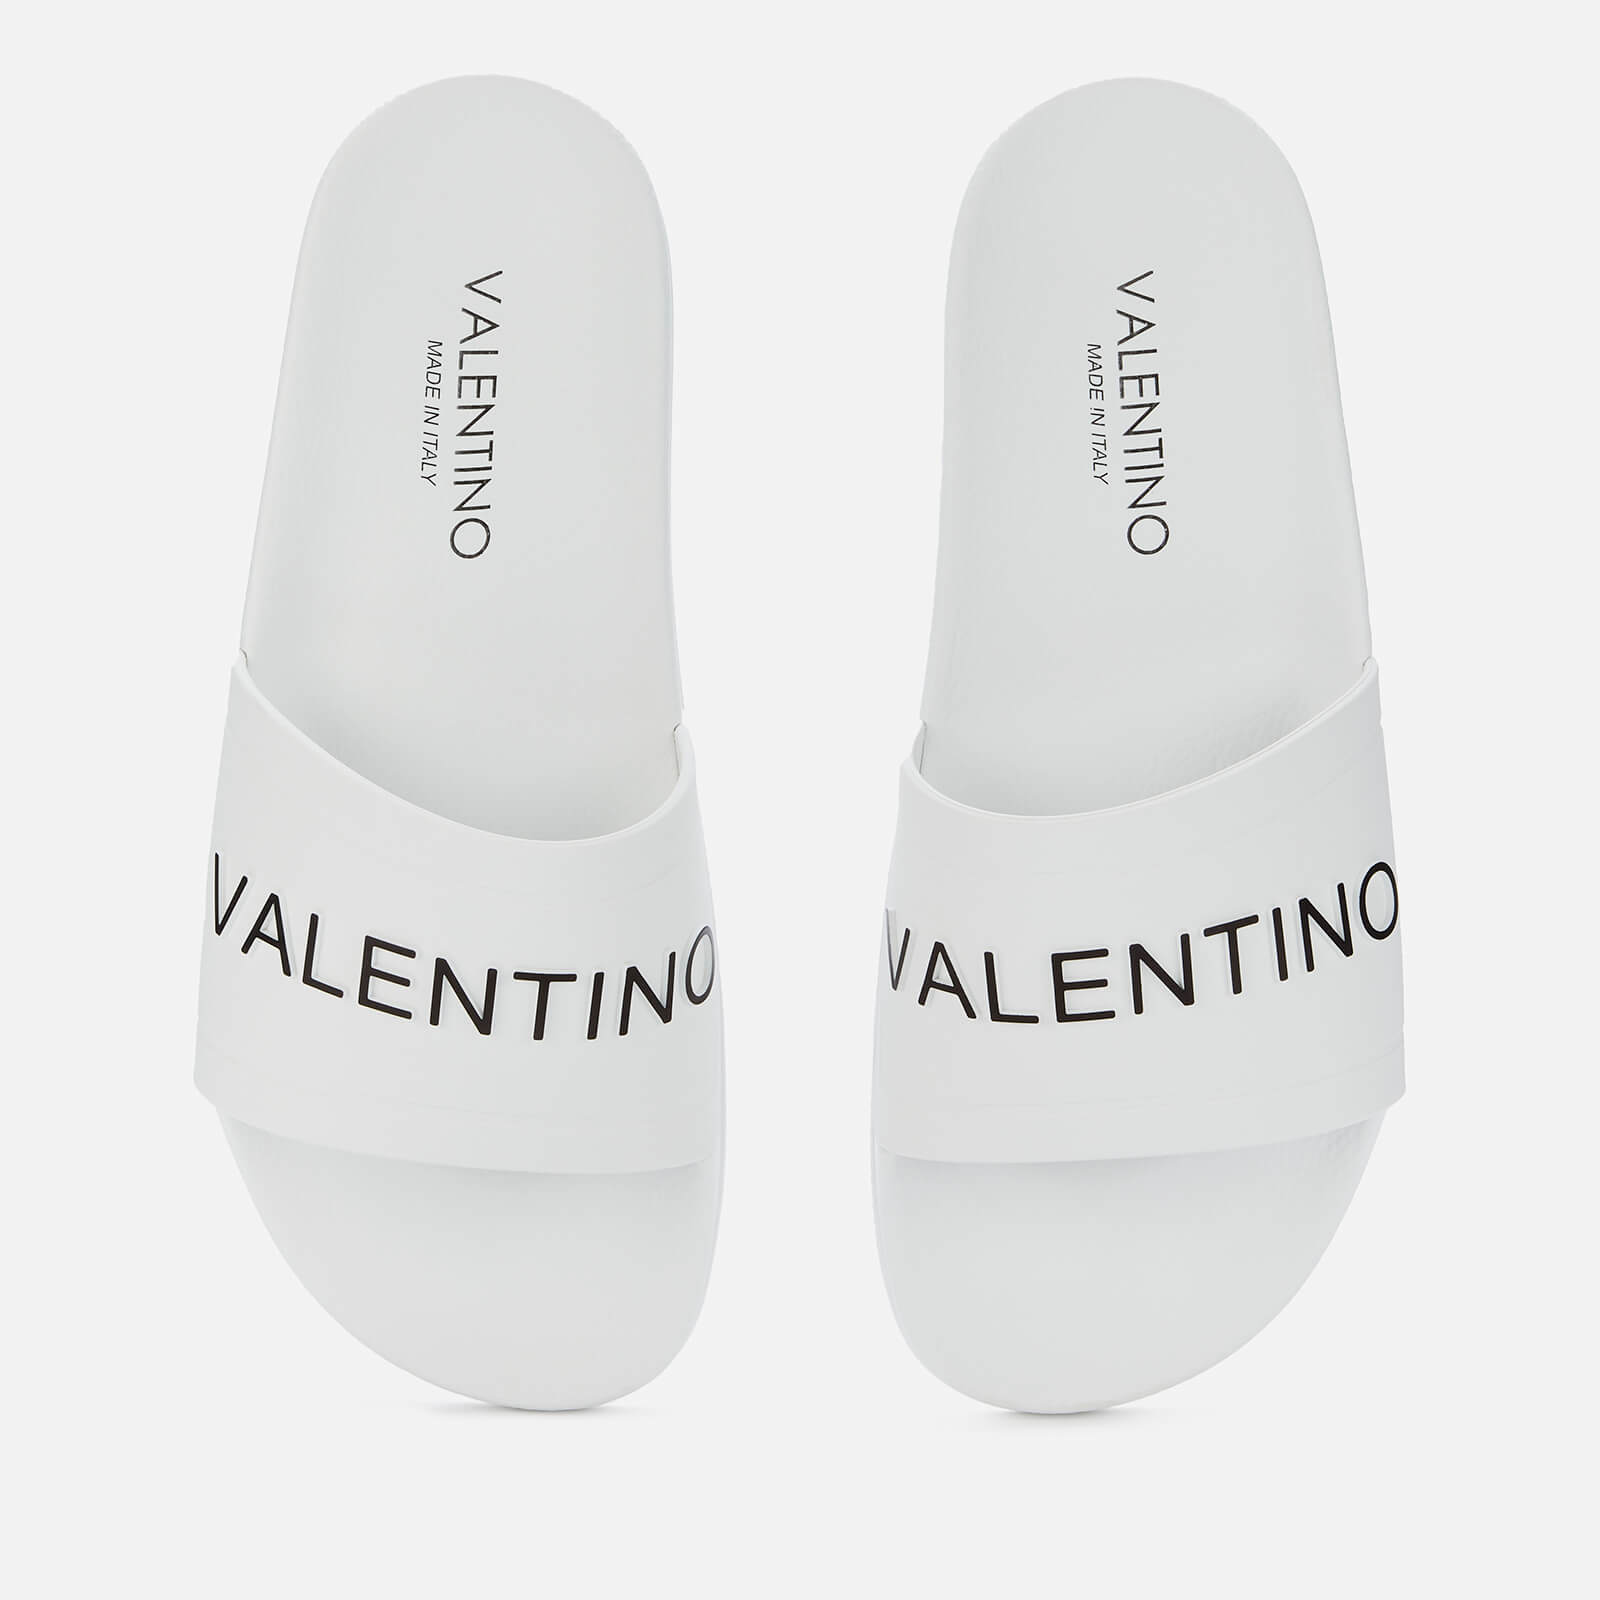 Valentino Shoes Men's Slide Sandals - White - UK 7